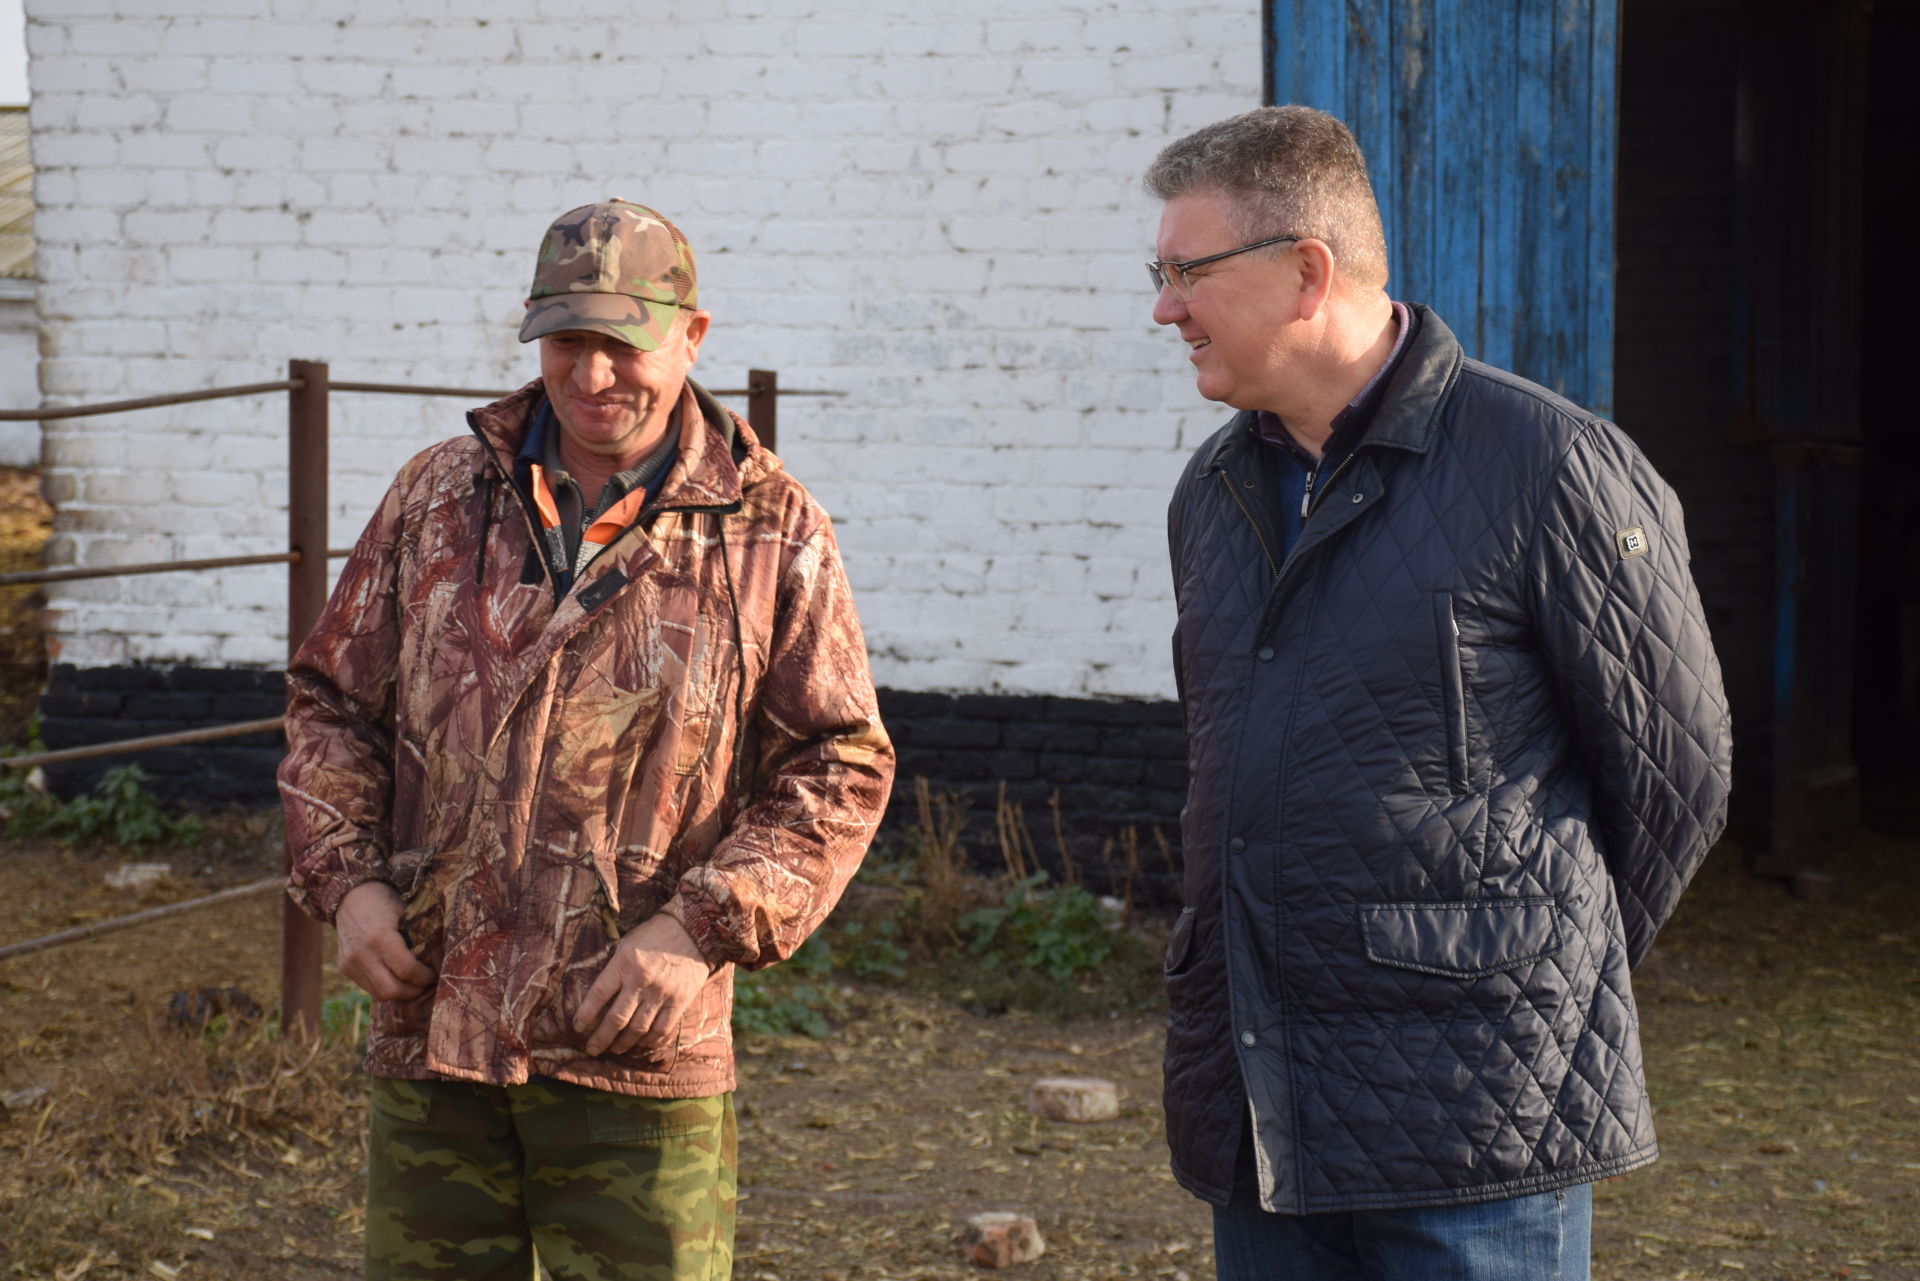 Алмаз Ахметшин посетил сельскохозяйственный объект в селе Егоркино